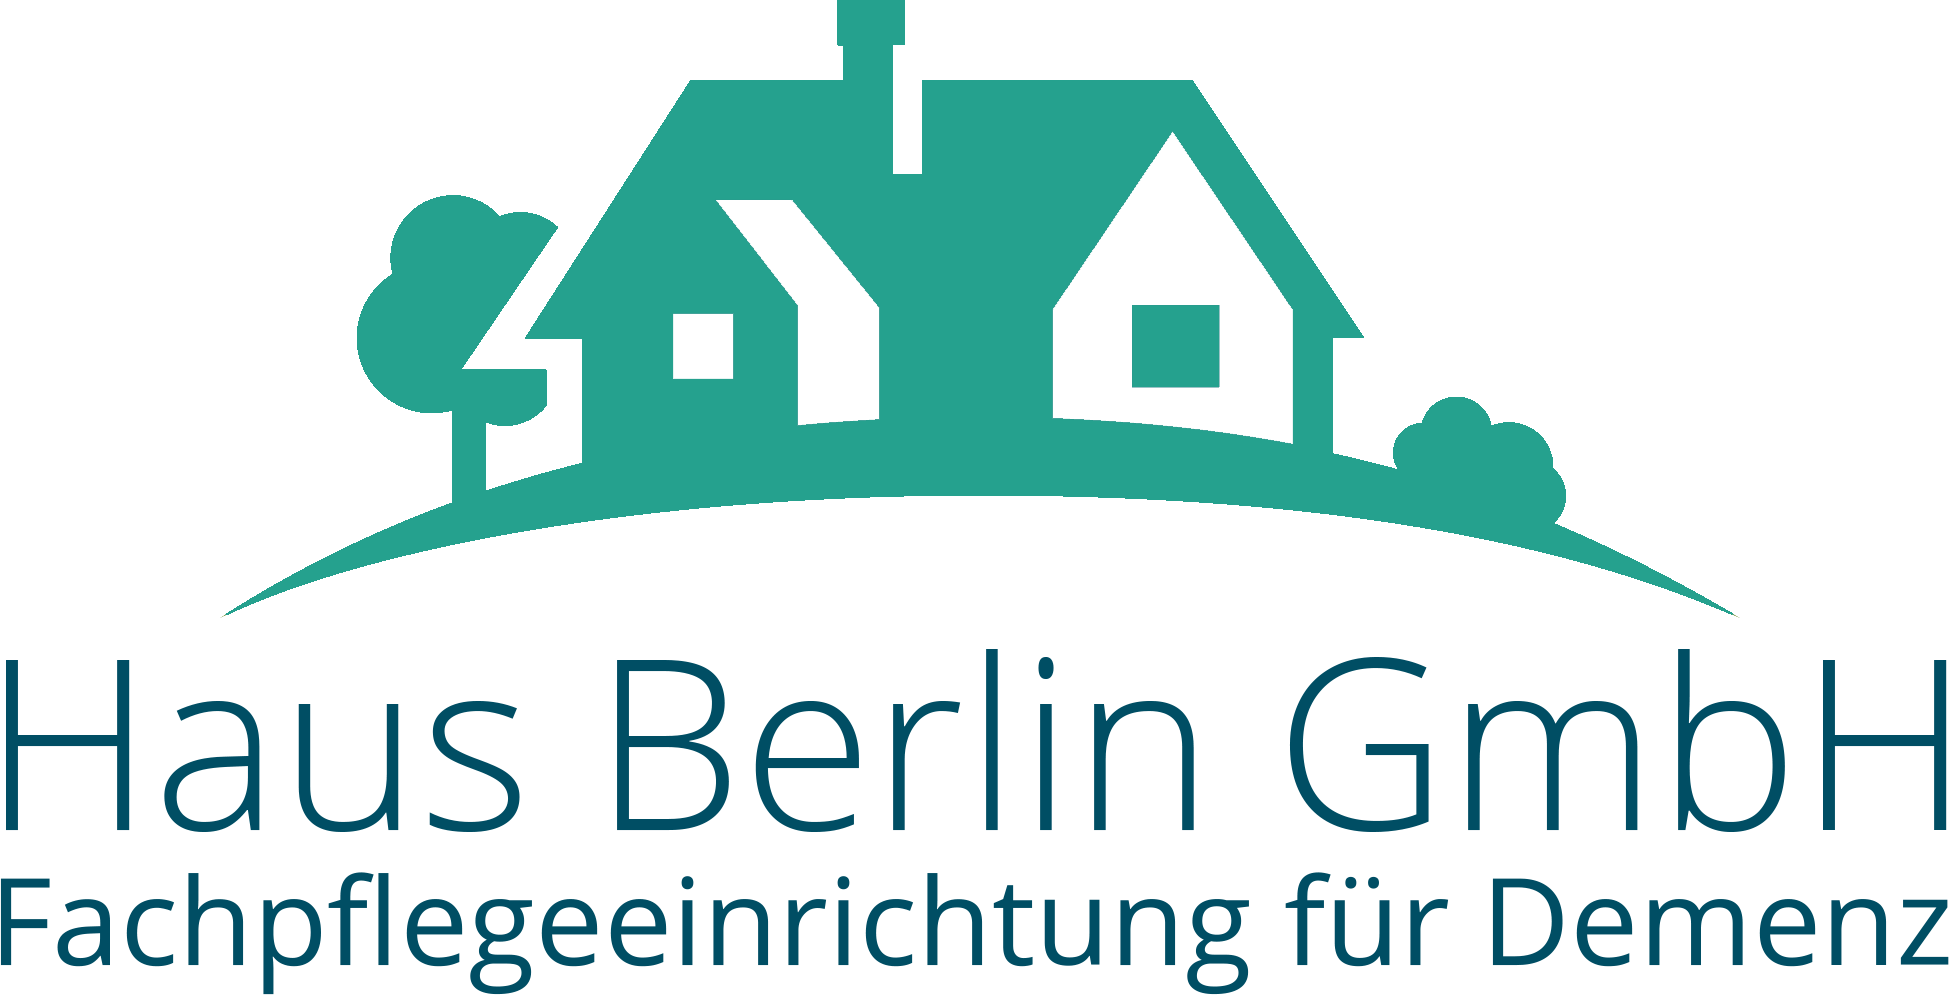 Fachpflegeeinrichtung für Demenz - Haus Berlin GmbH in Bad Eilsen